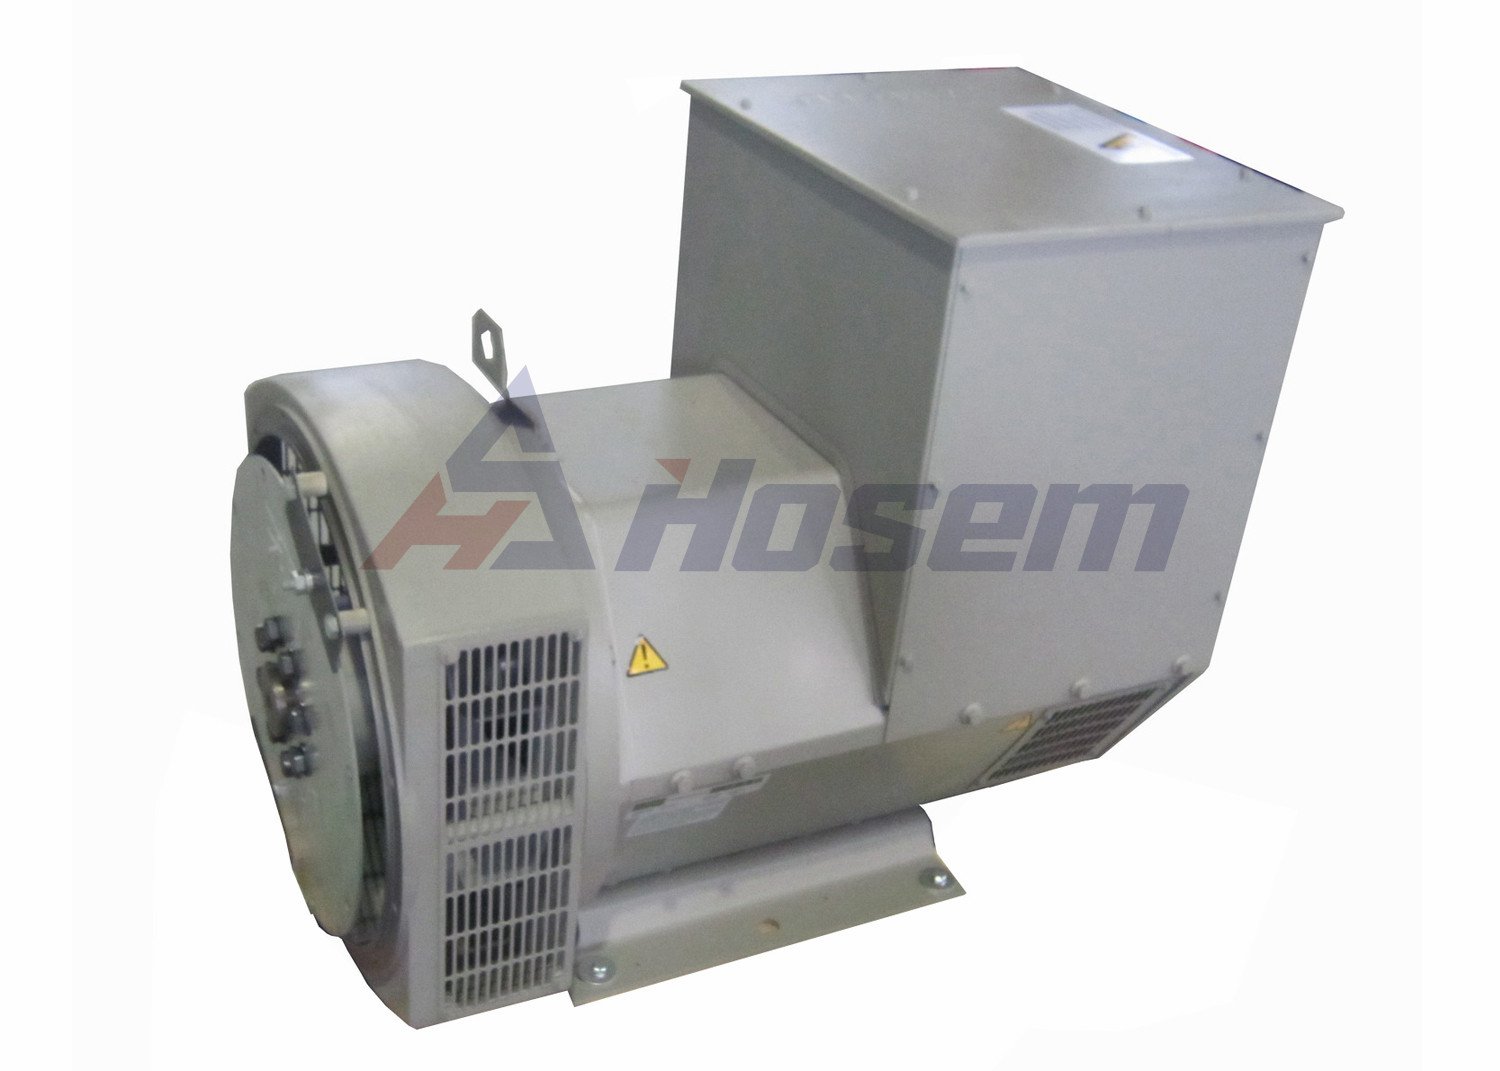 Bezszczotkowy alternator 60 Hz 10kva - 1650KVA dla zestawu generatora (1)